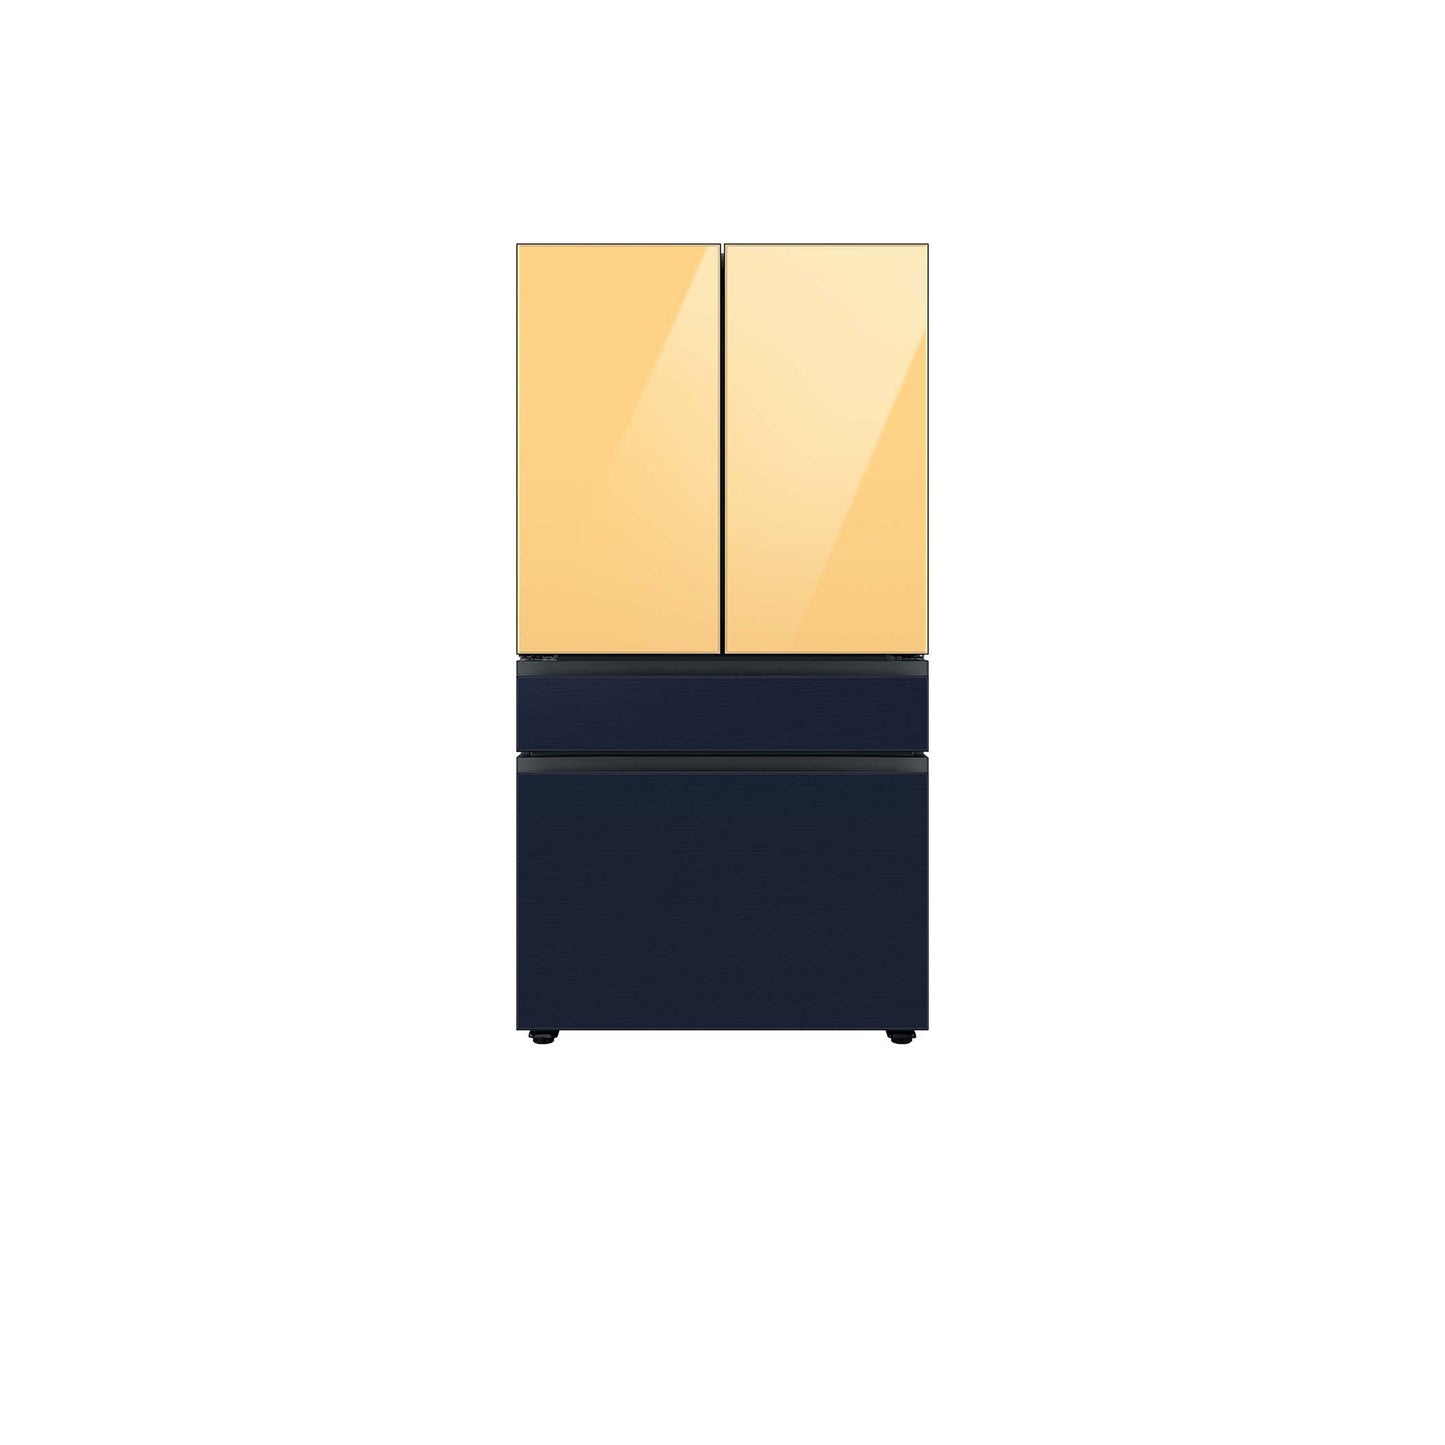 ثلاجة مخصصة بباب فرنسي بأربعة أبواب (23 قدمًا مكعبًا) مع ألواح علوية من الزجاج باللون الأزرق الصباحي وألواح وسطى وسفلية من الزجاج الأبيض.